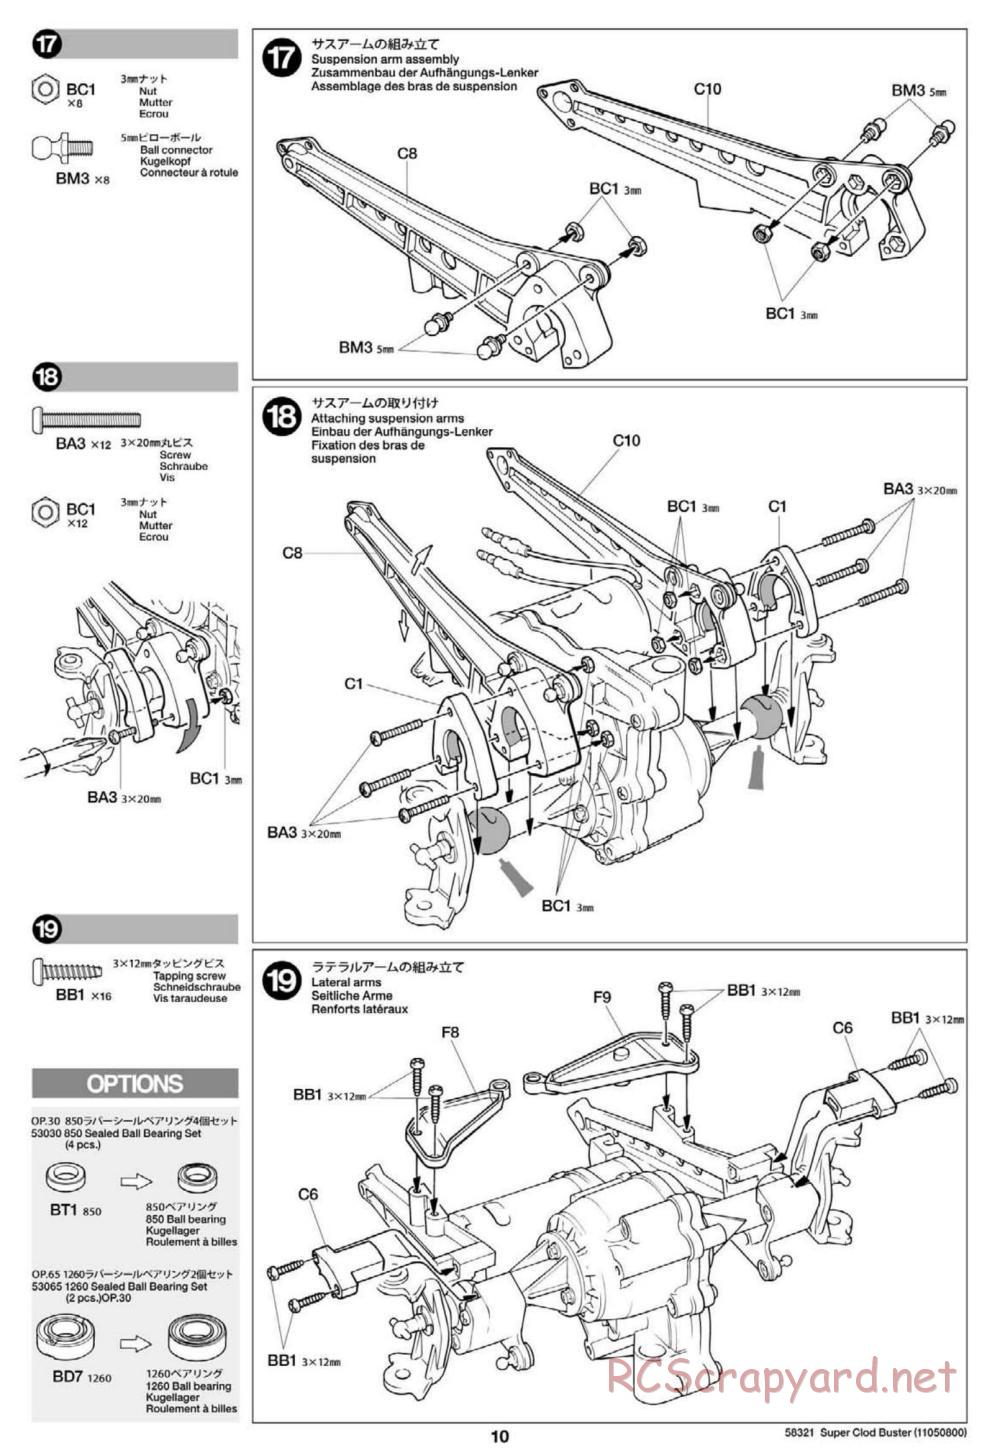 Tamiya - Super Clod Buster Chassis - Manual - Page 10